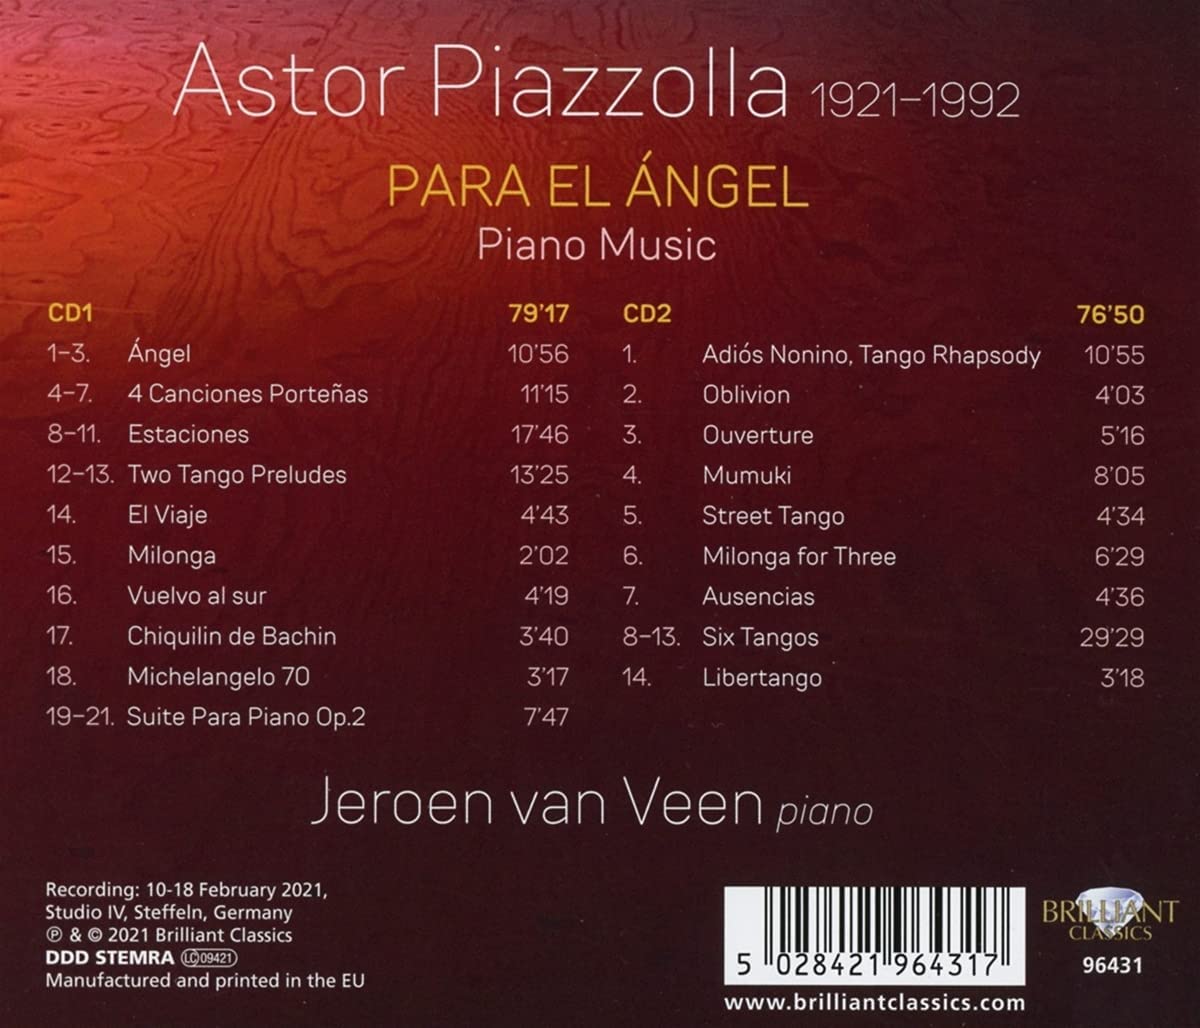 Jeroen van Veen 피아졸라: 피아노 작품 (Astor Piazzolla: Para El Angel - Piano Music)